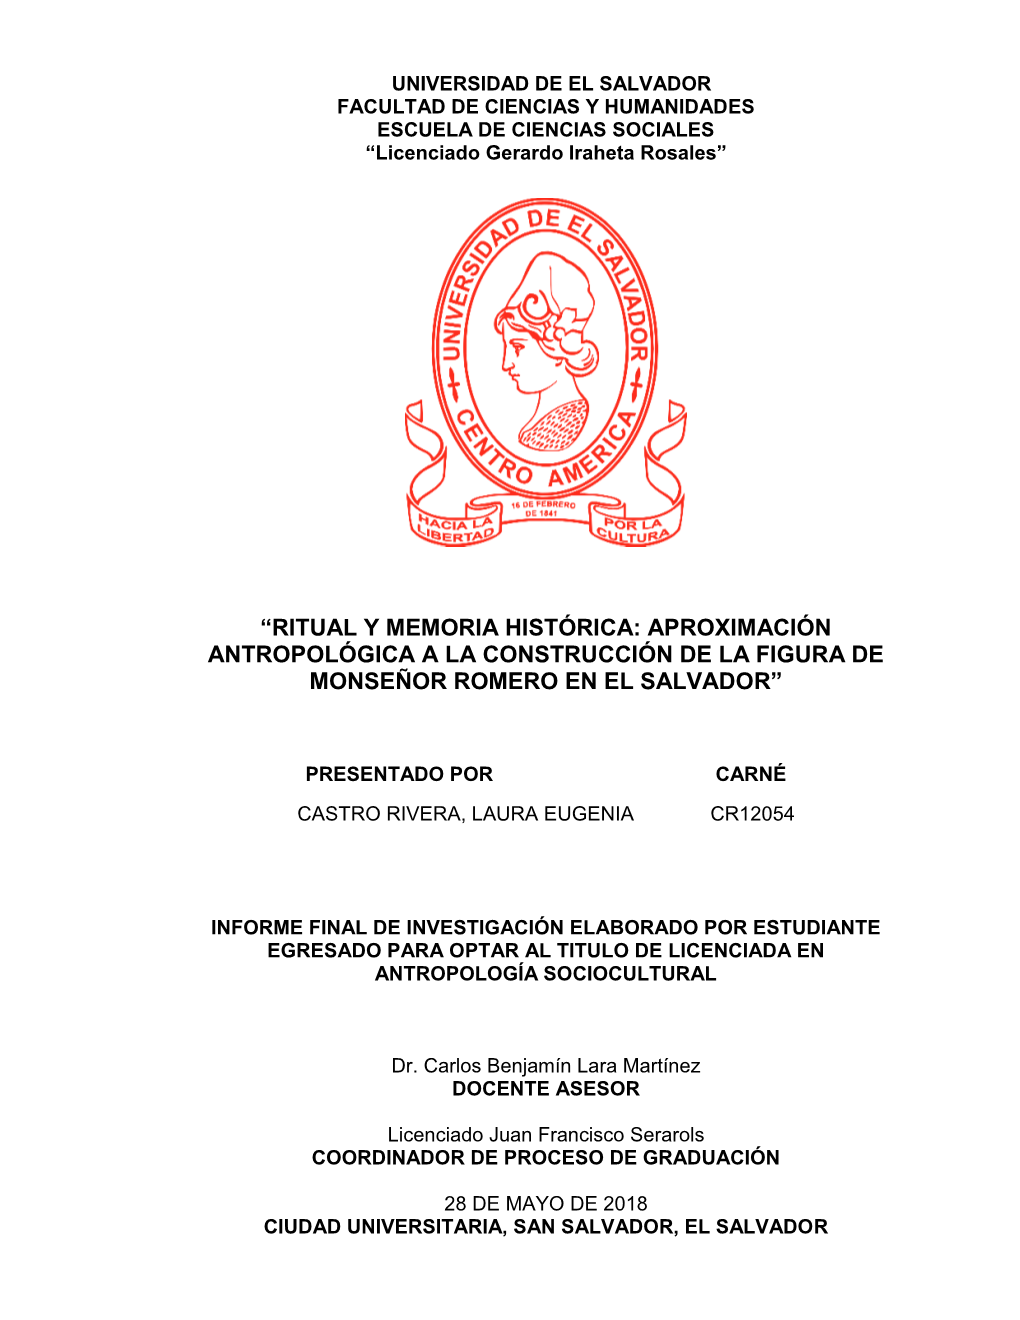 Ritual Y Memoria Histórica: Aproximación Antropológica a La Construcción De La Figura De Monseñor Romero En El Salvador”